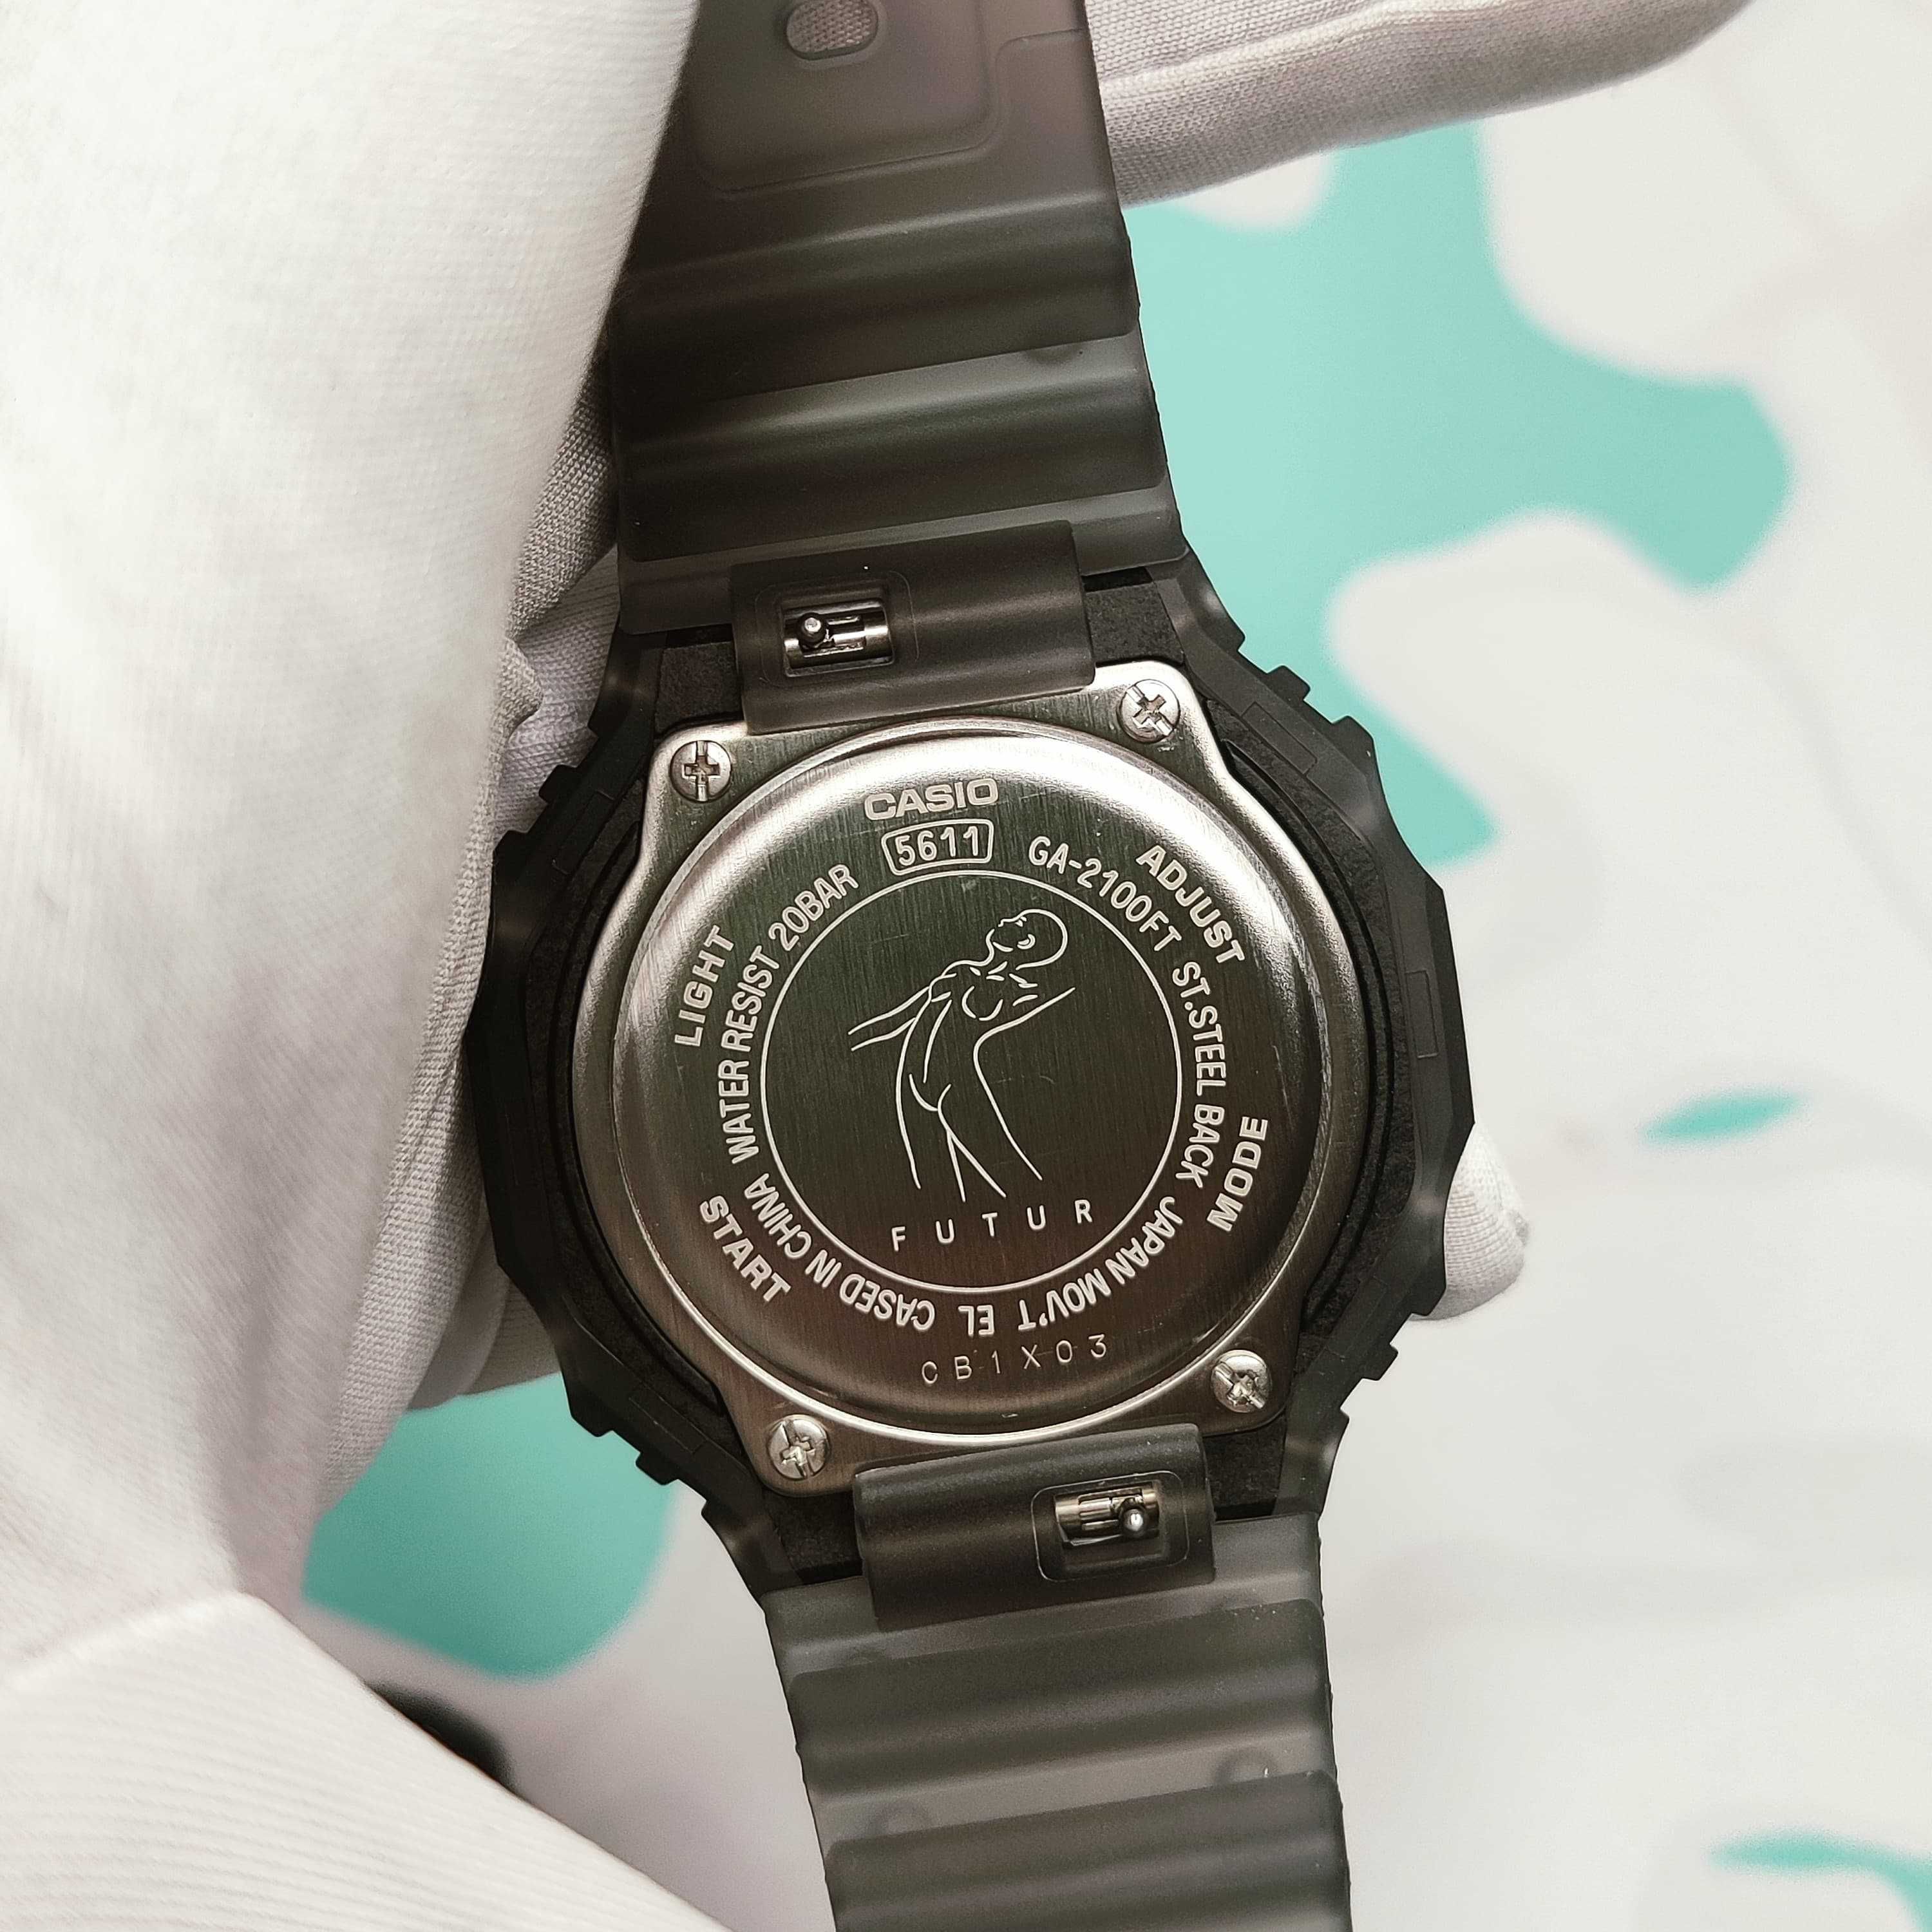 Наручные часы Casio GA-2100FT-8A G-Shock оригинал скелетоны Futur